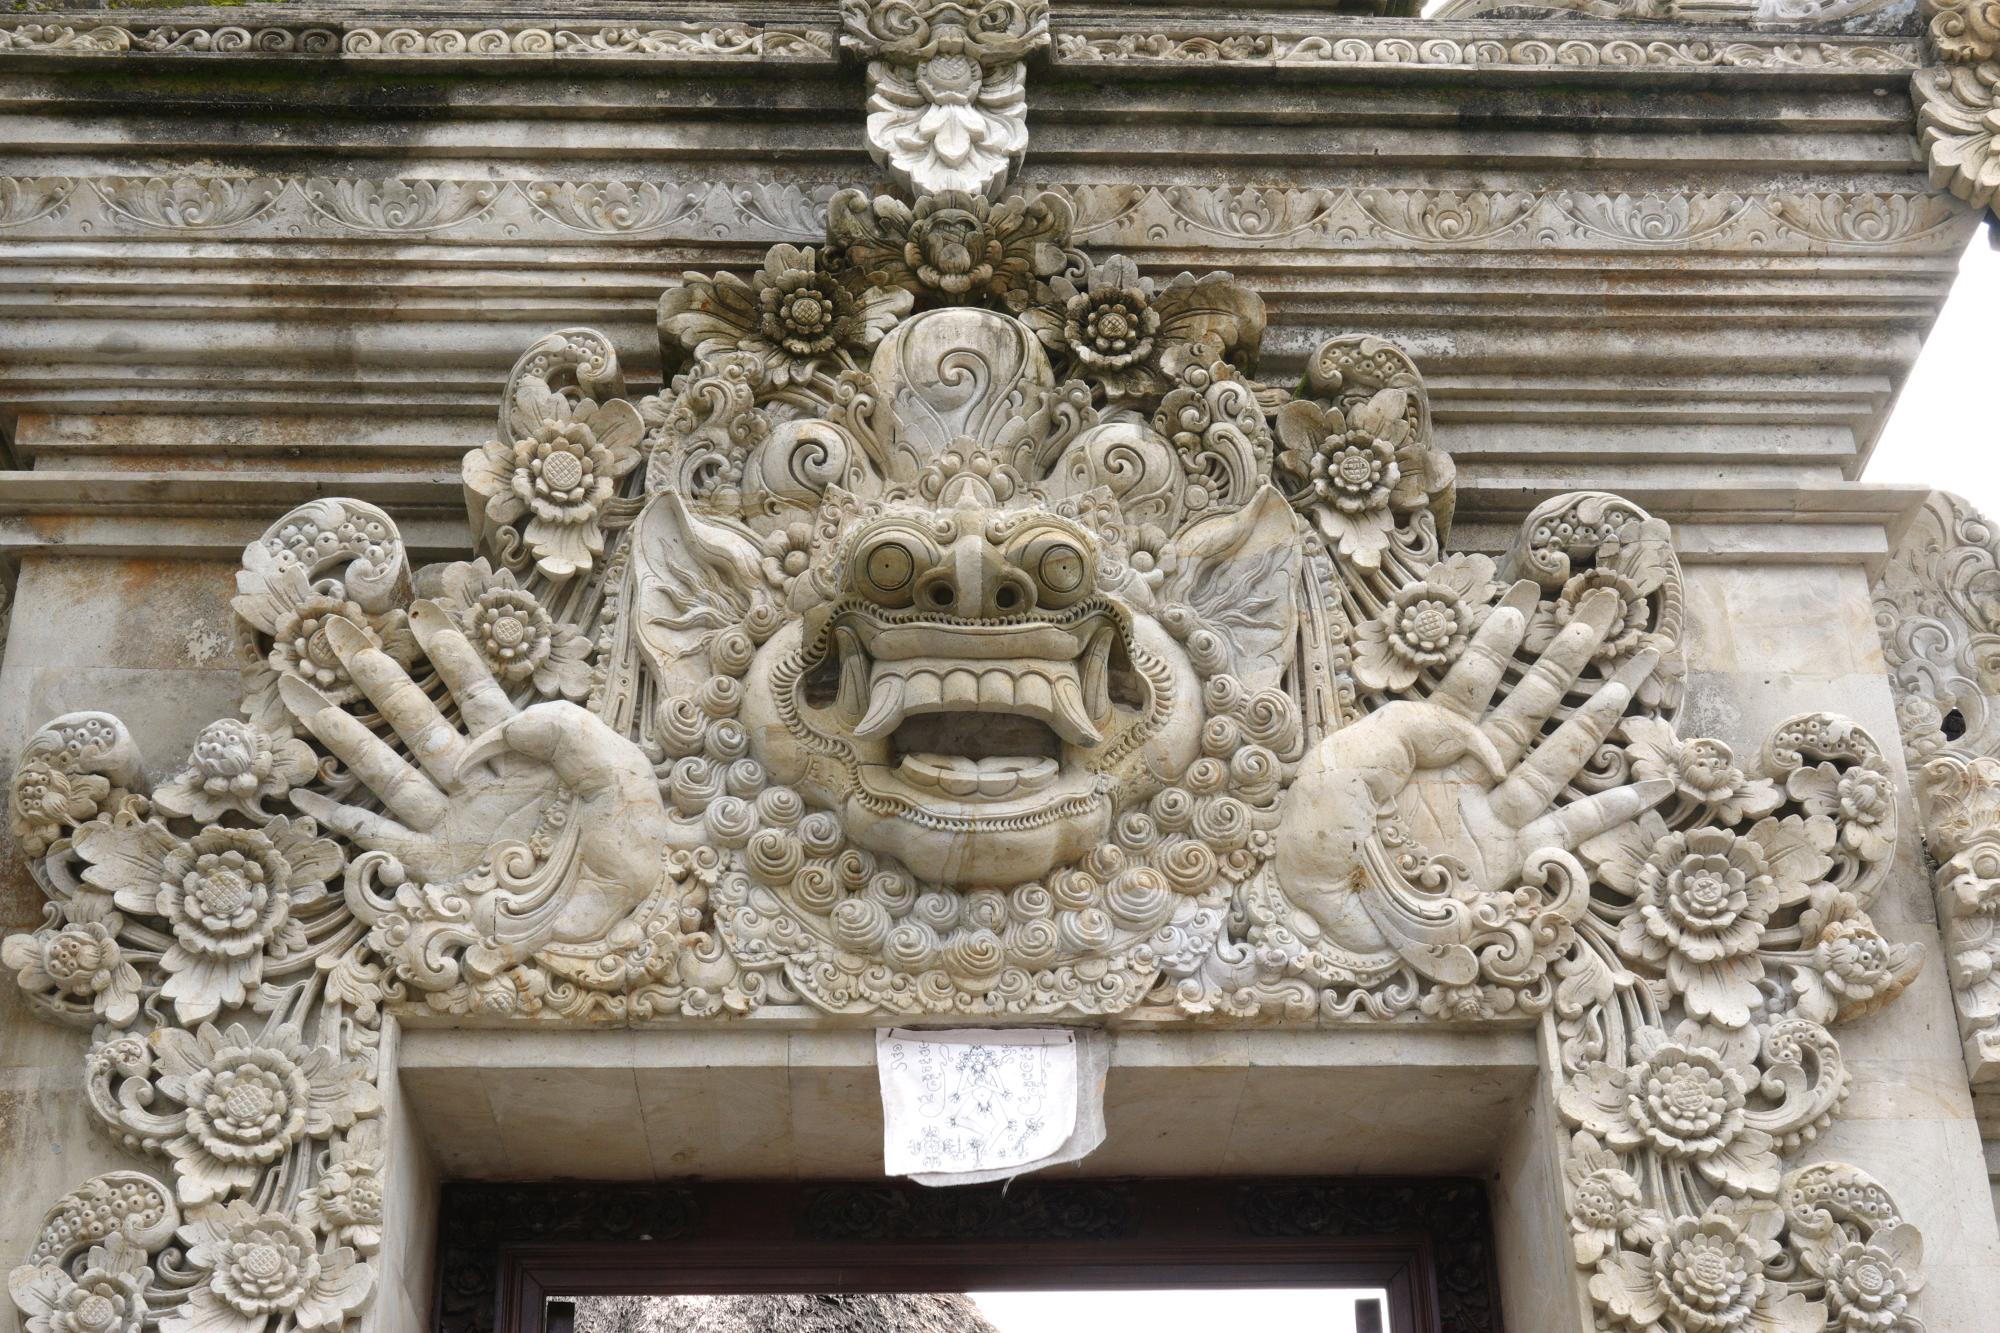 Bali - Batuan Temple #1